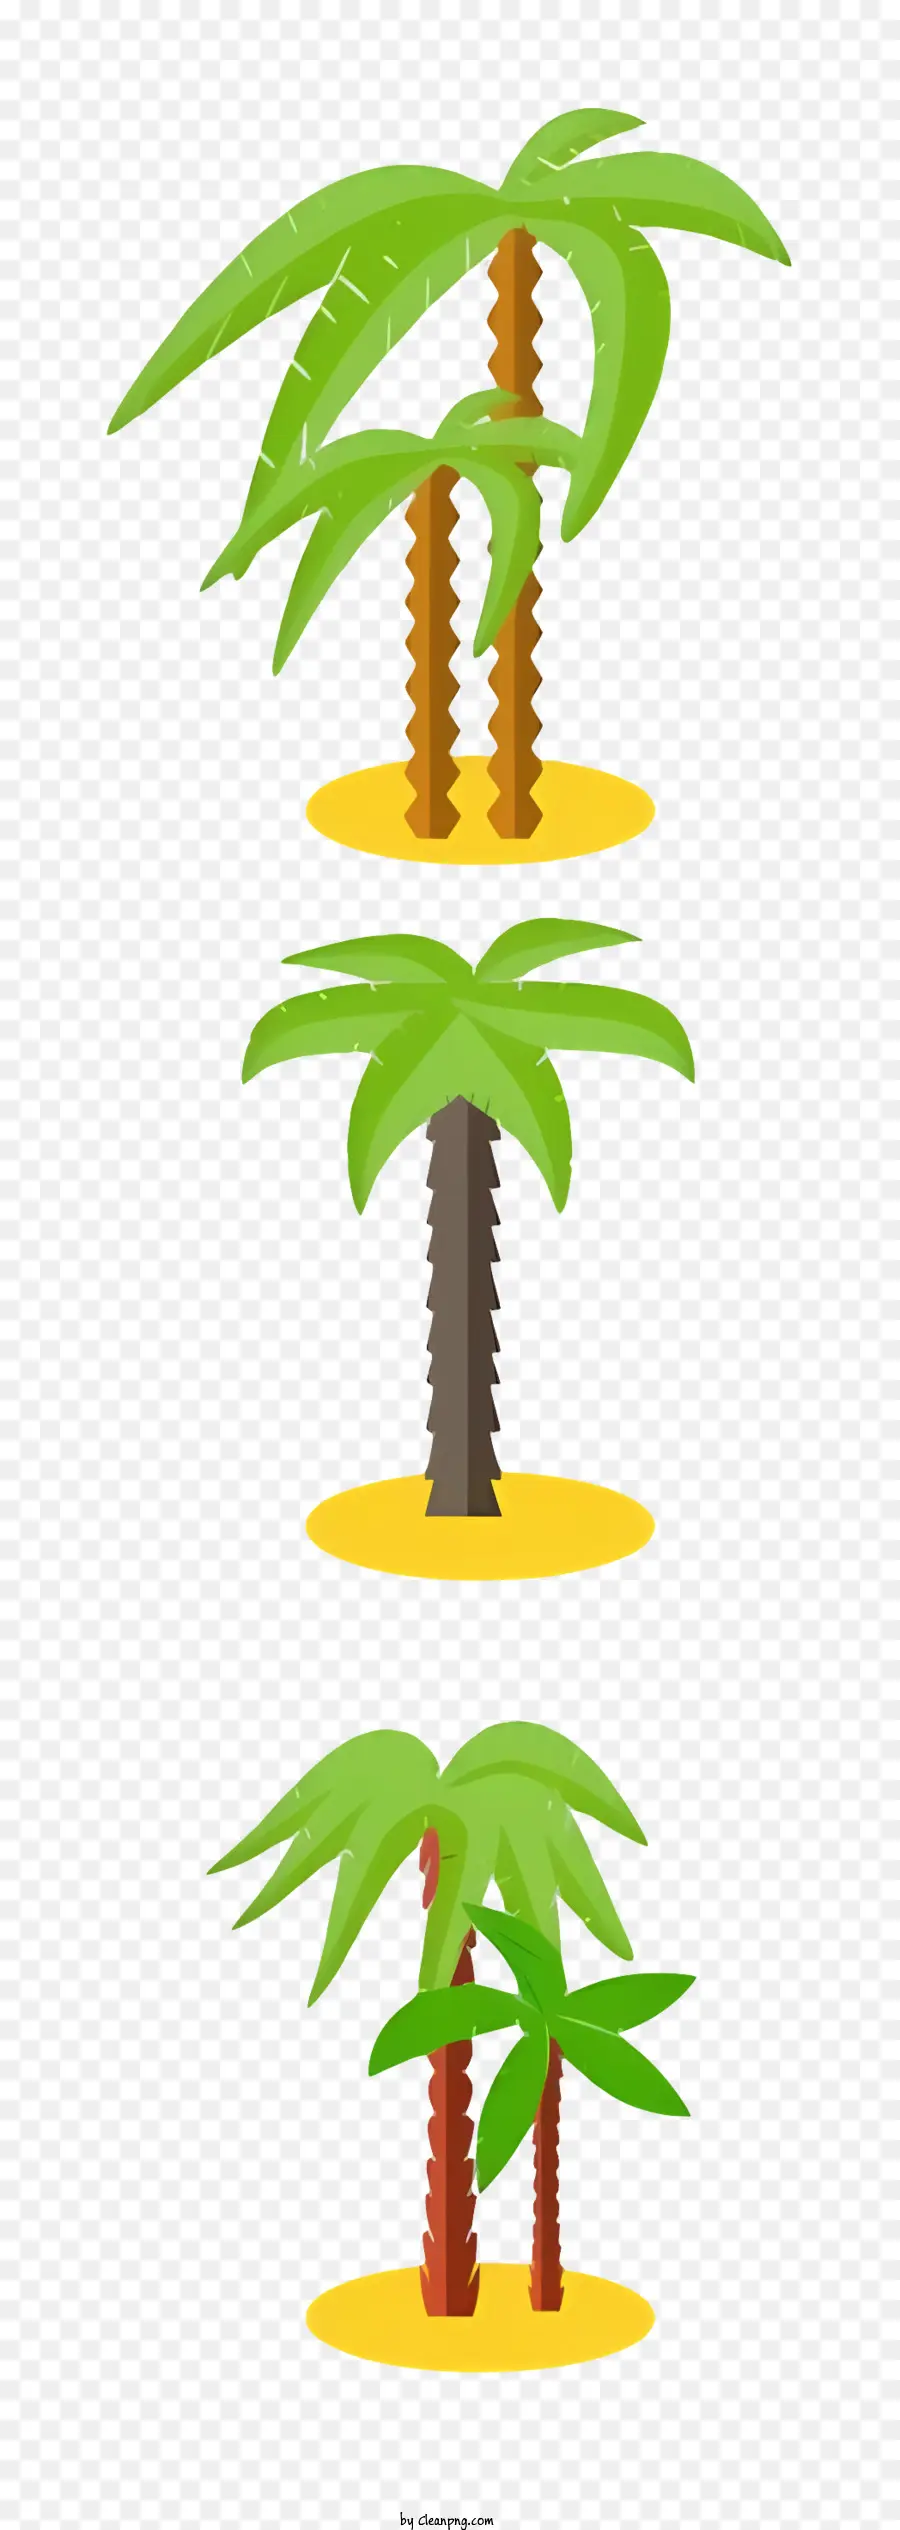 palme - Tre palme in diverse fasi dell'isola